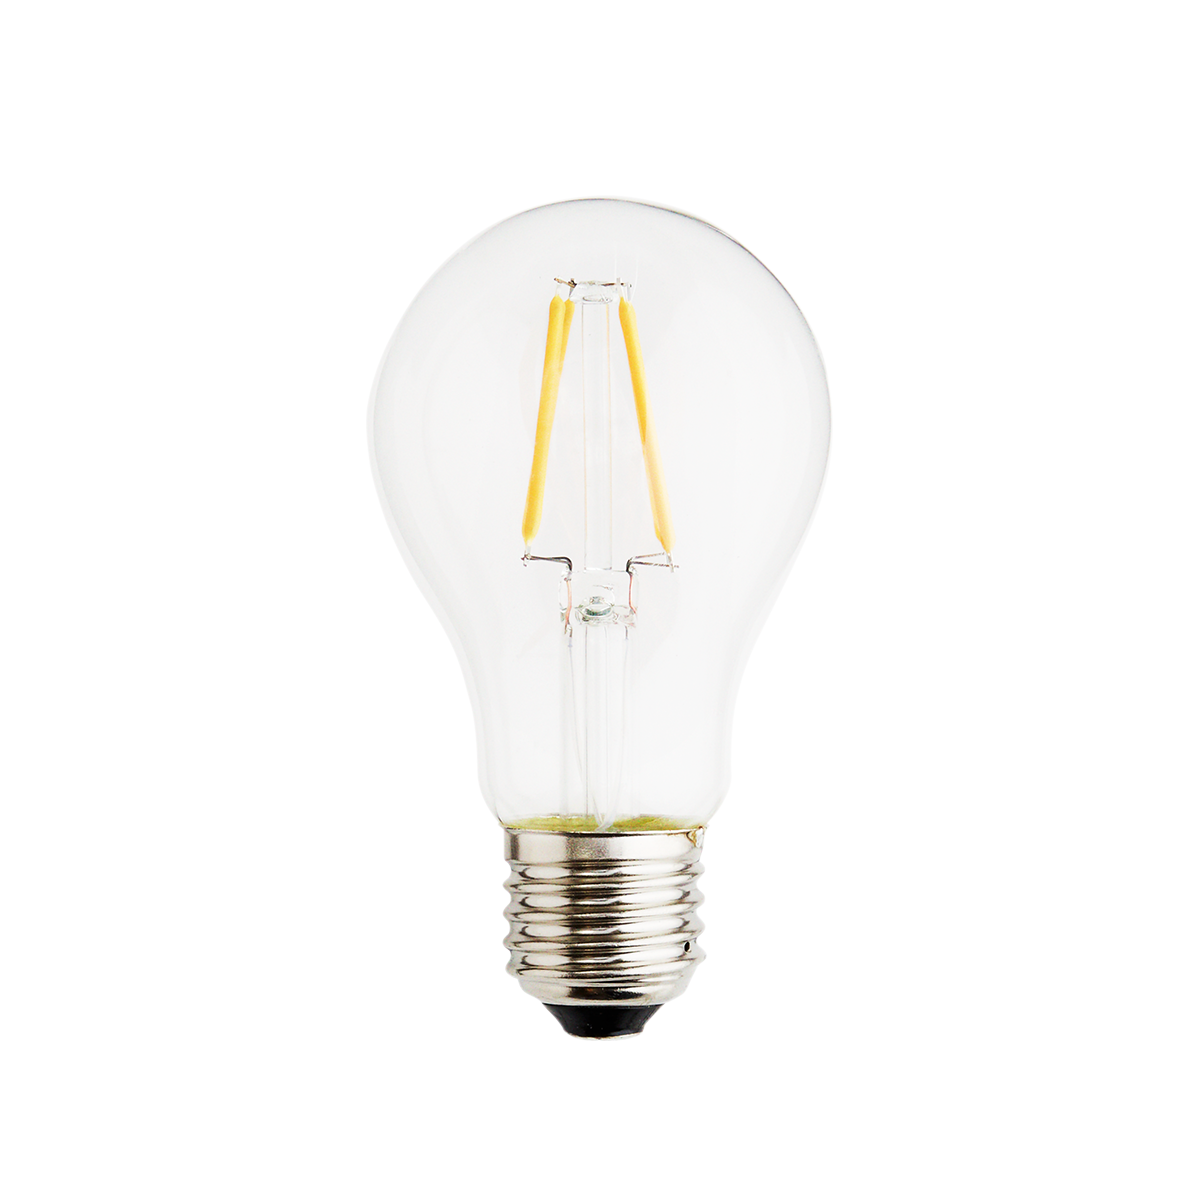 LED bulb, 4W, E27